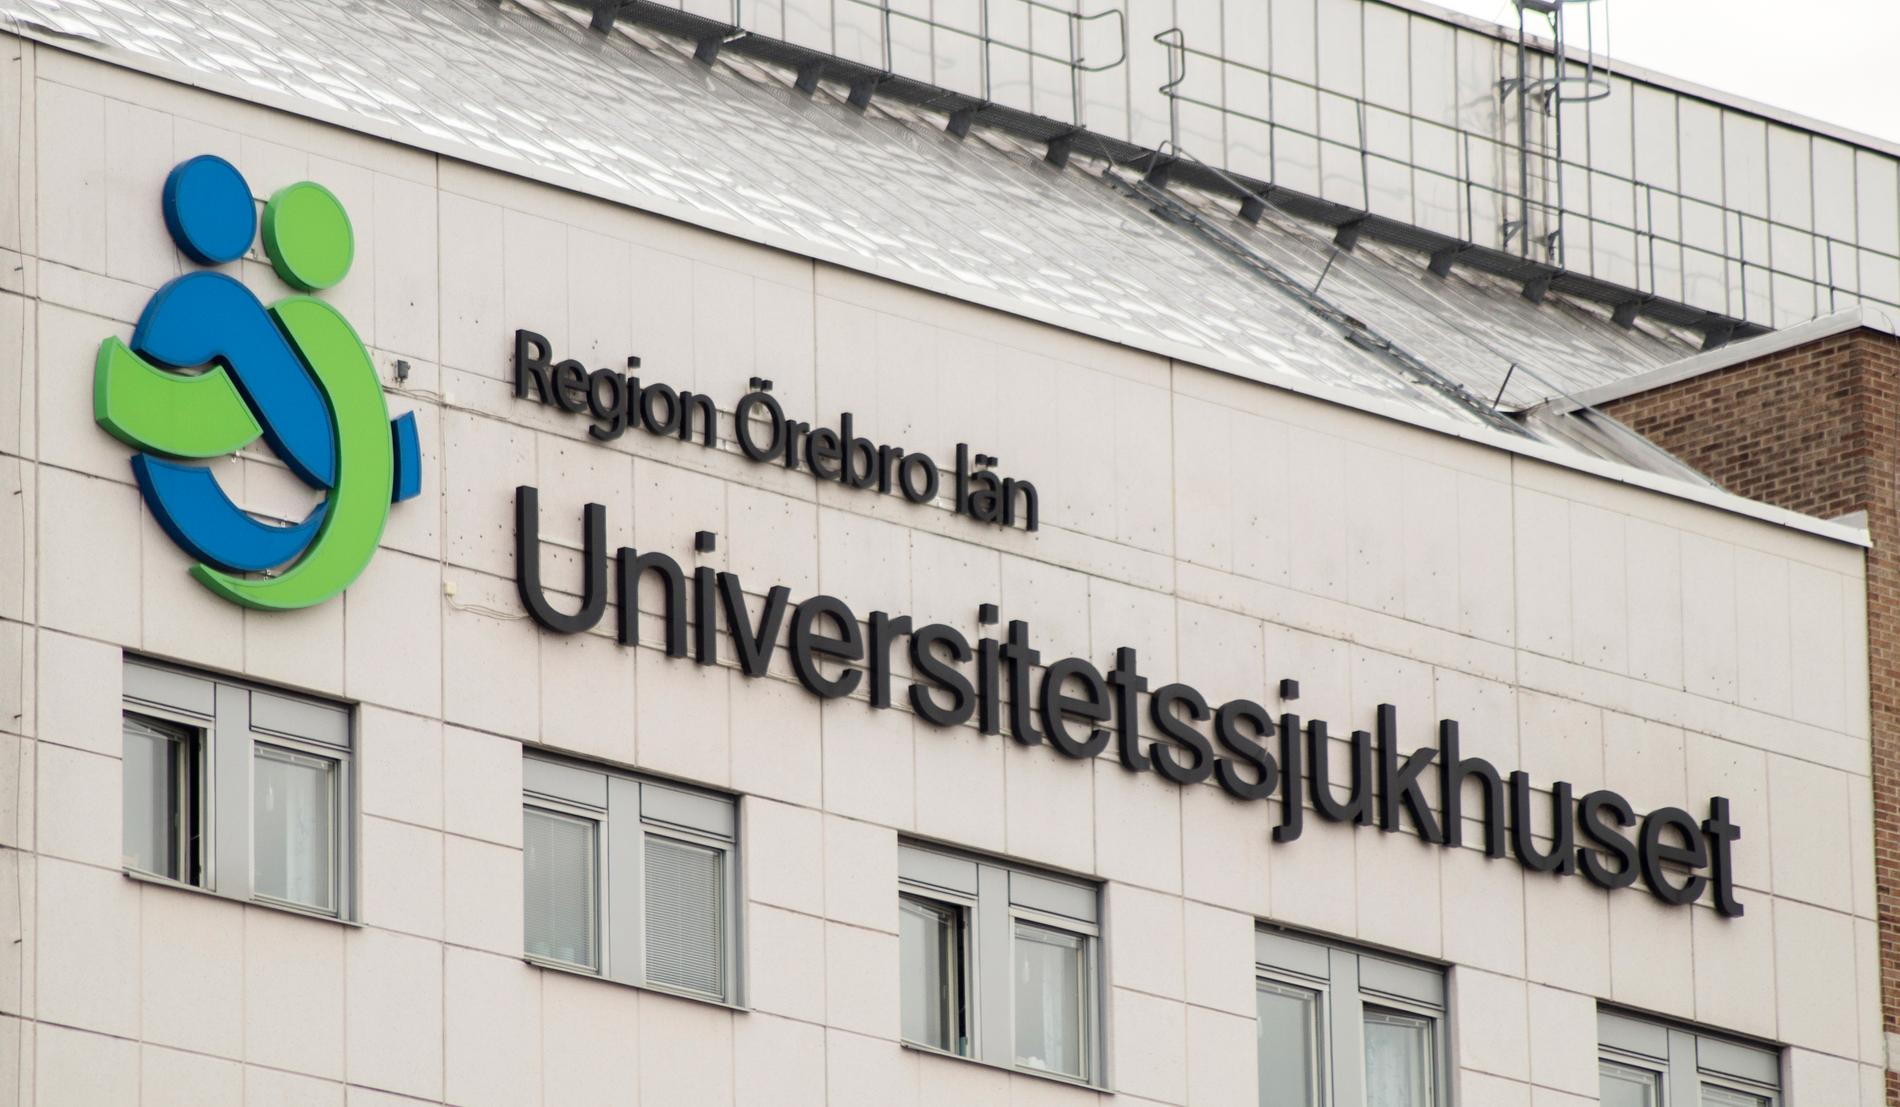 Universitetssjukhuset Örebro är utsett till Bästa sjukhuset 2019 i klassen universitetssjukhus. Arkivbild.